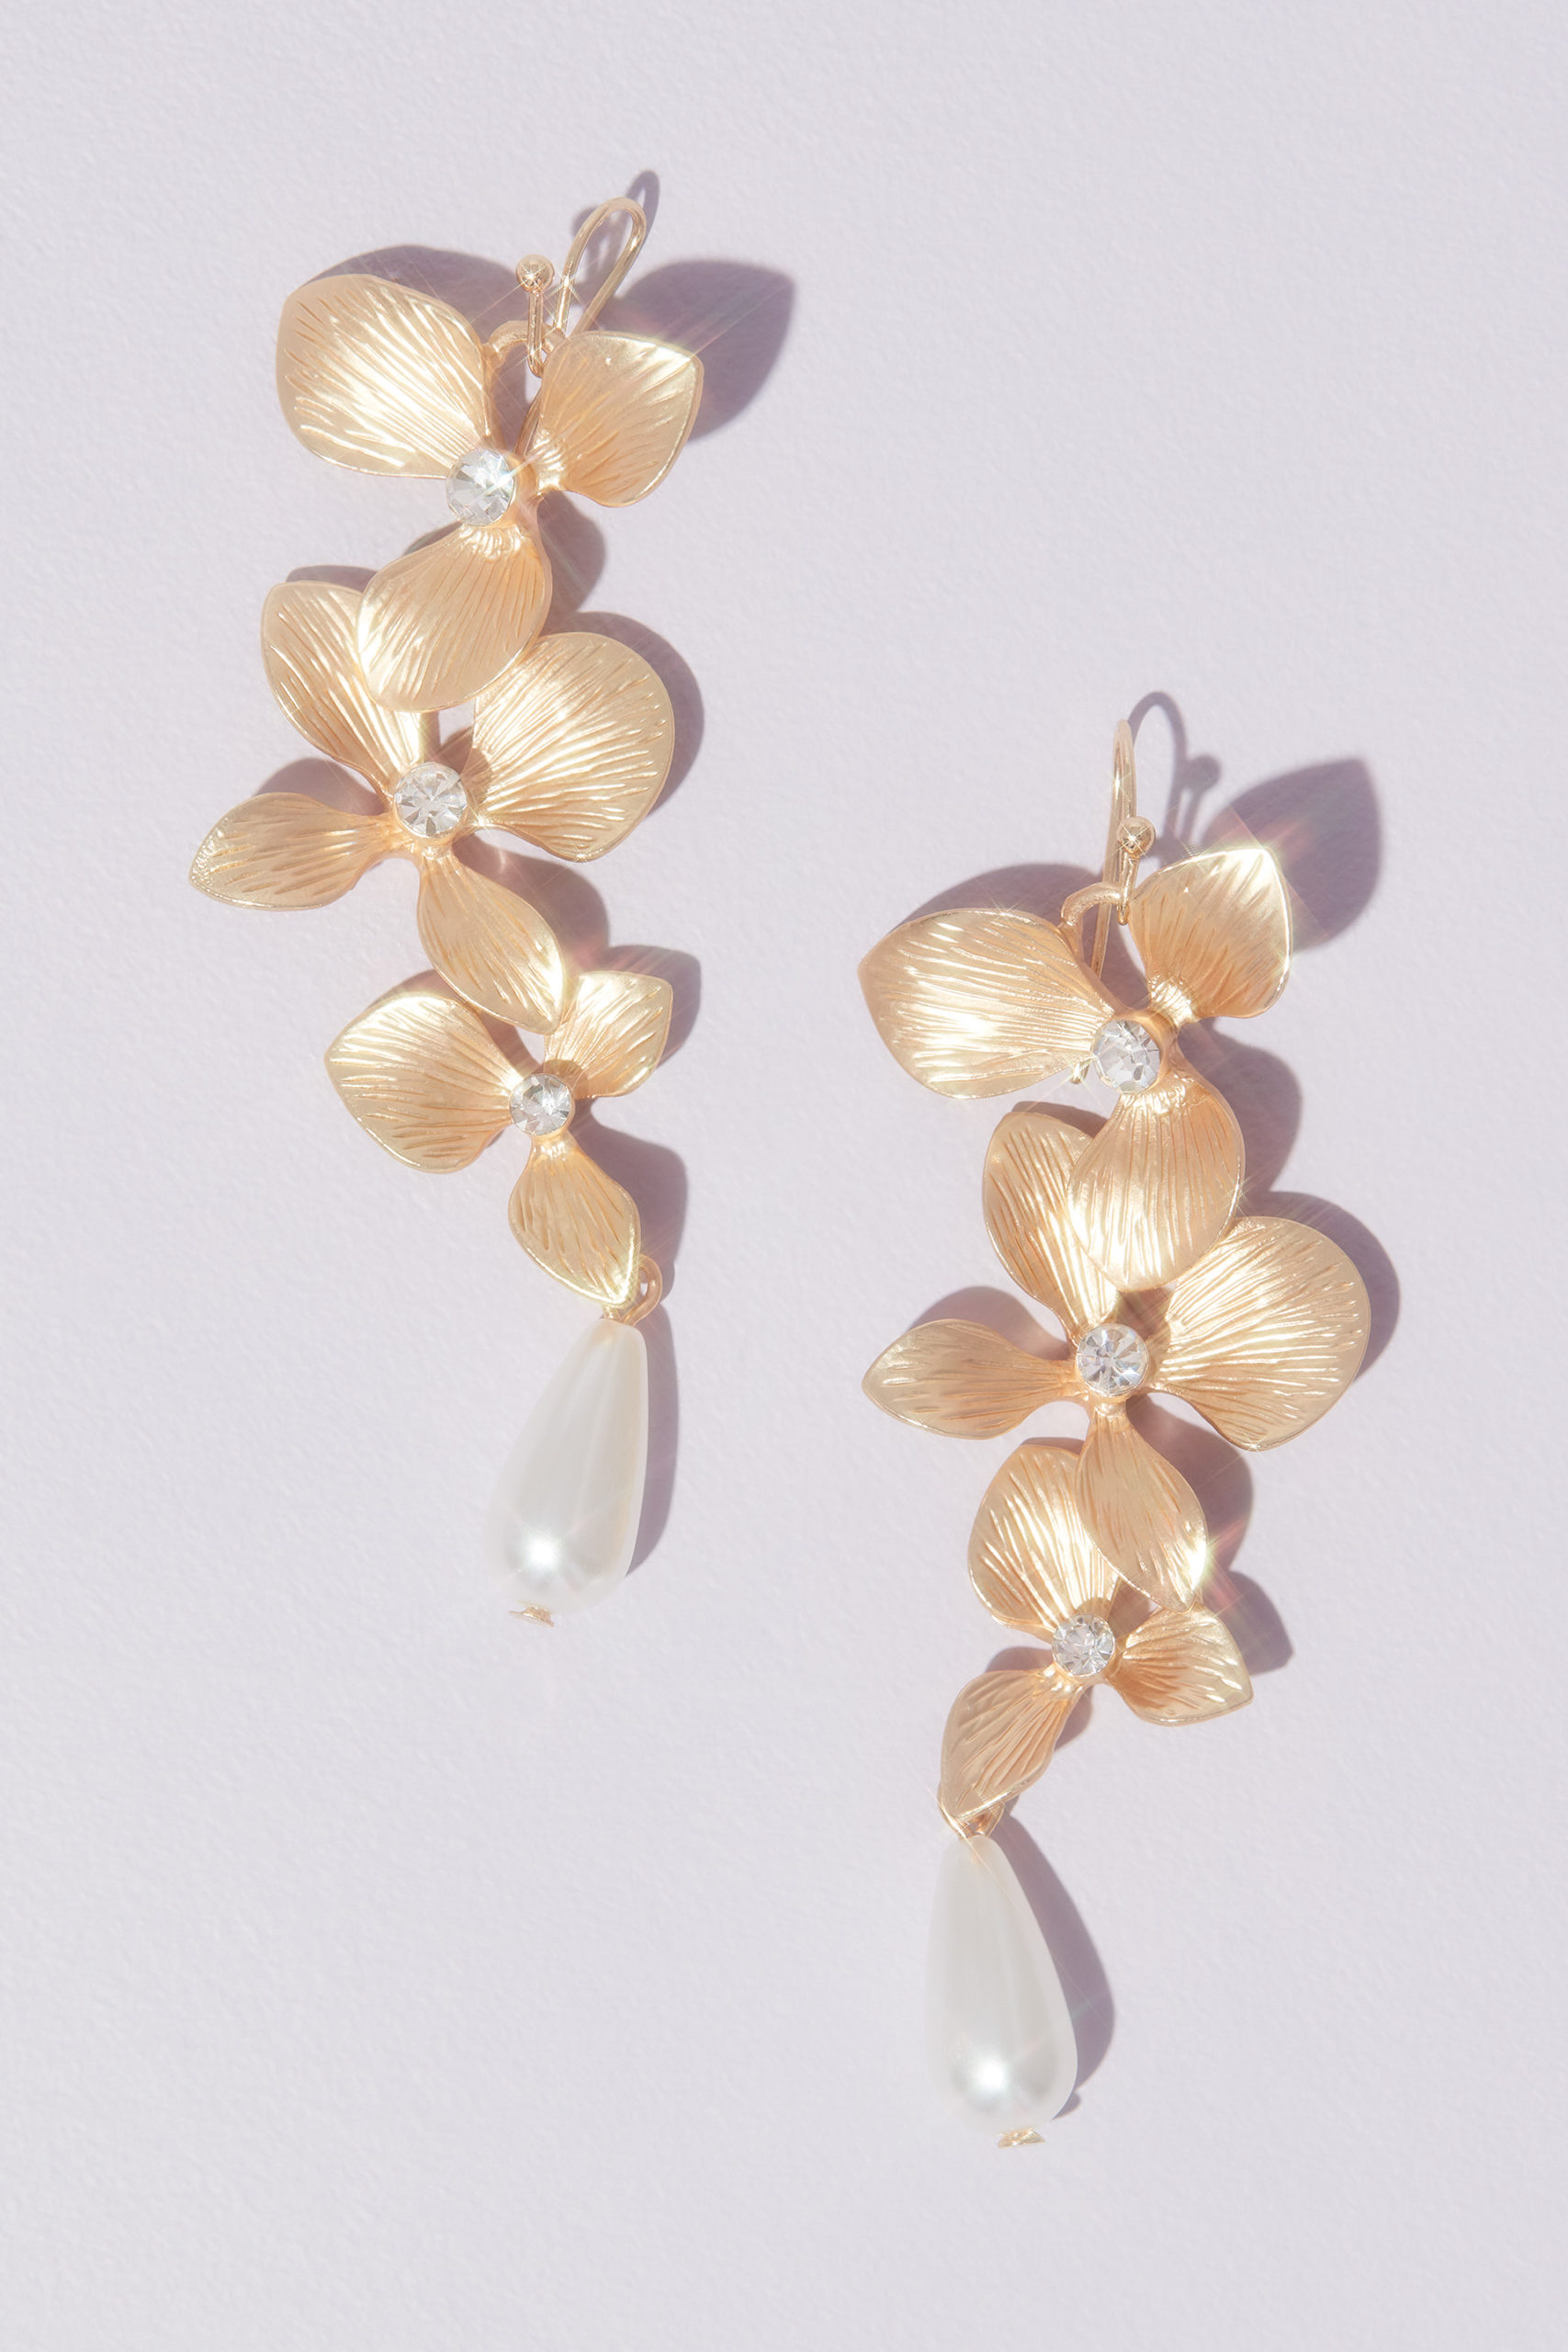 Dangling Floral Drop Earrings with Teardrop Pearls